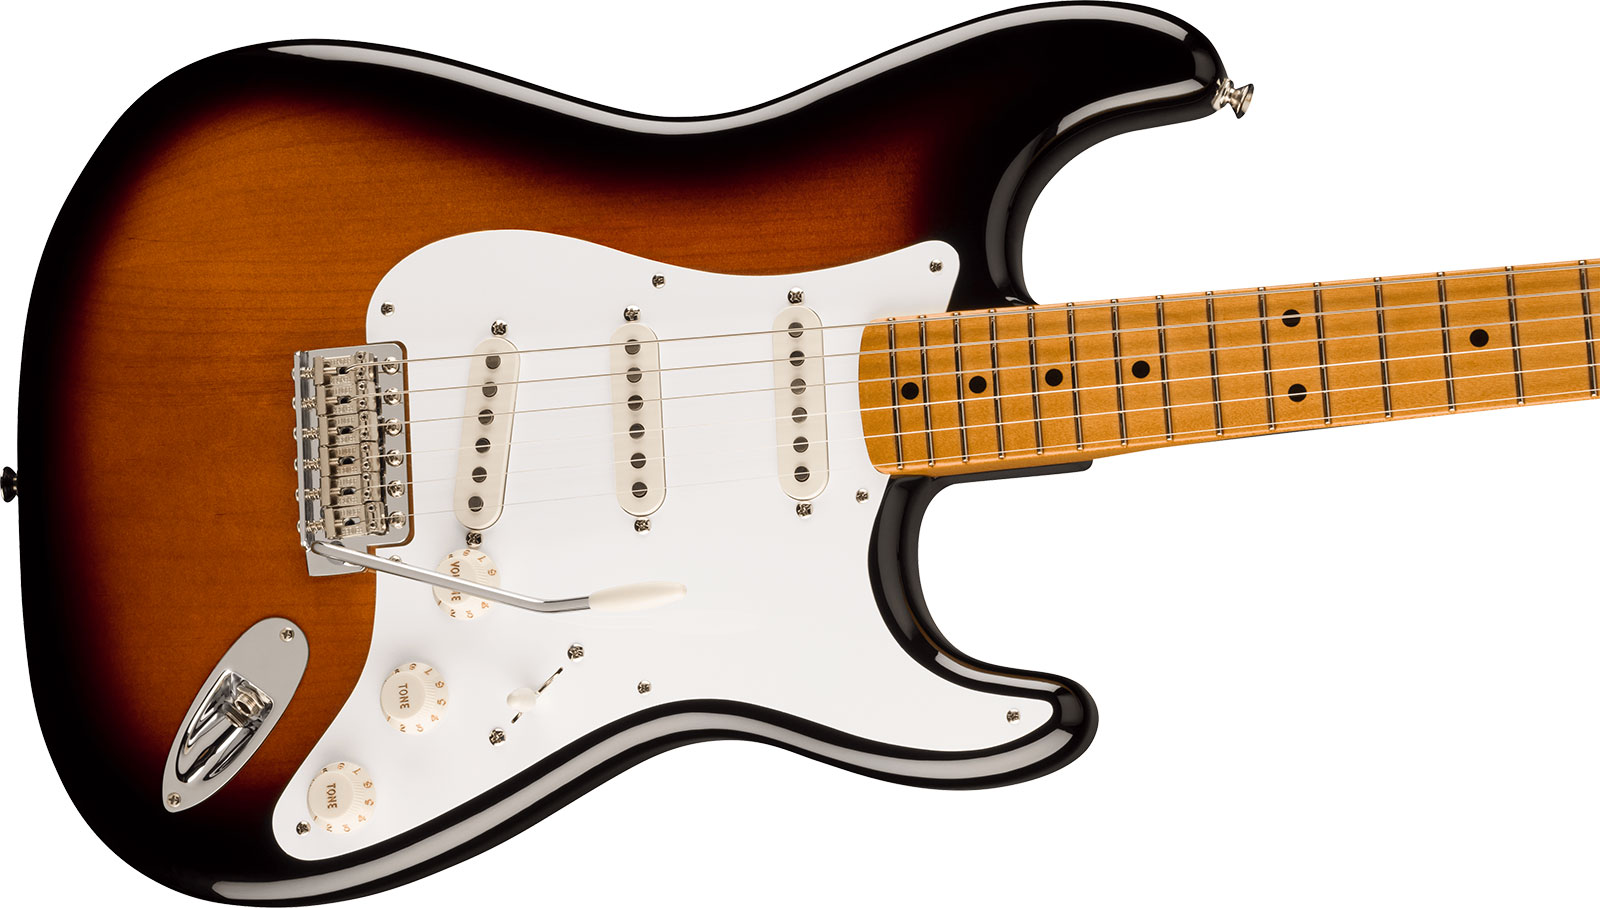 Fender Strat 50s Vintera 2 Mex 3s Trem Mn - 2-color Sunburst - Str shape electric guitar - Variation 2